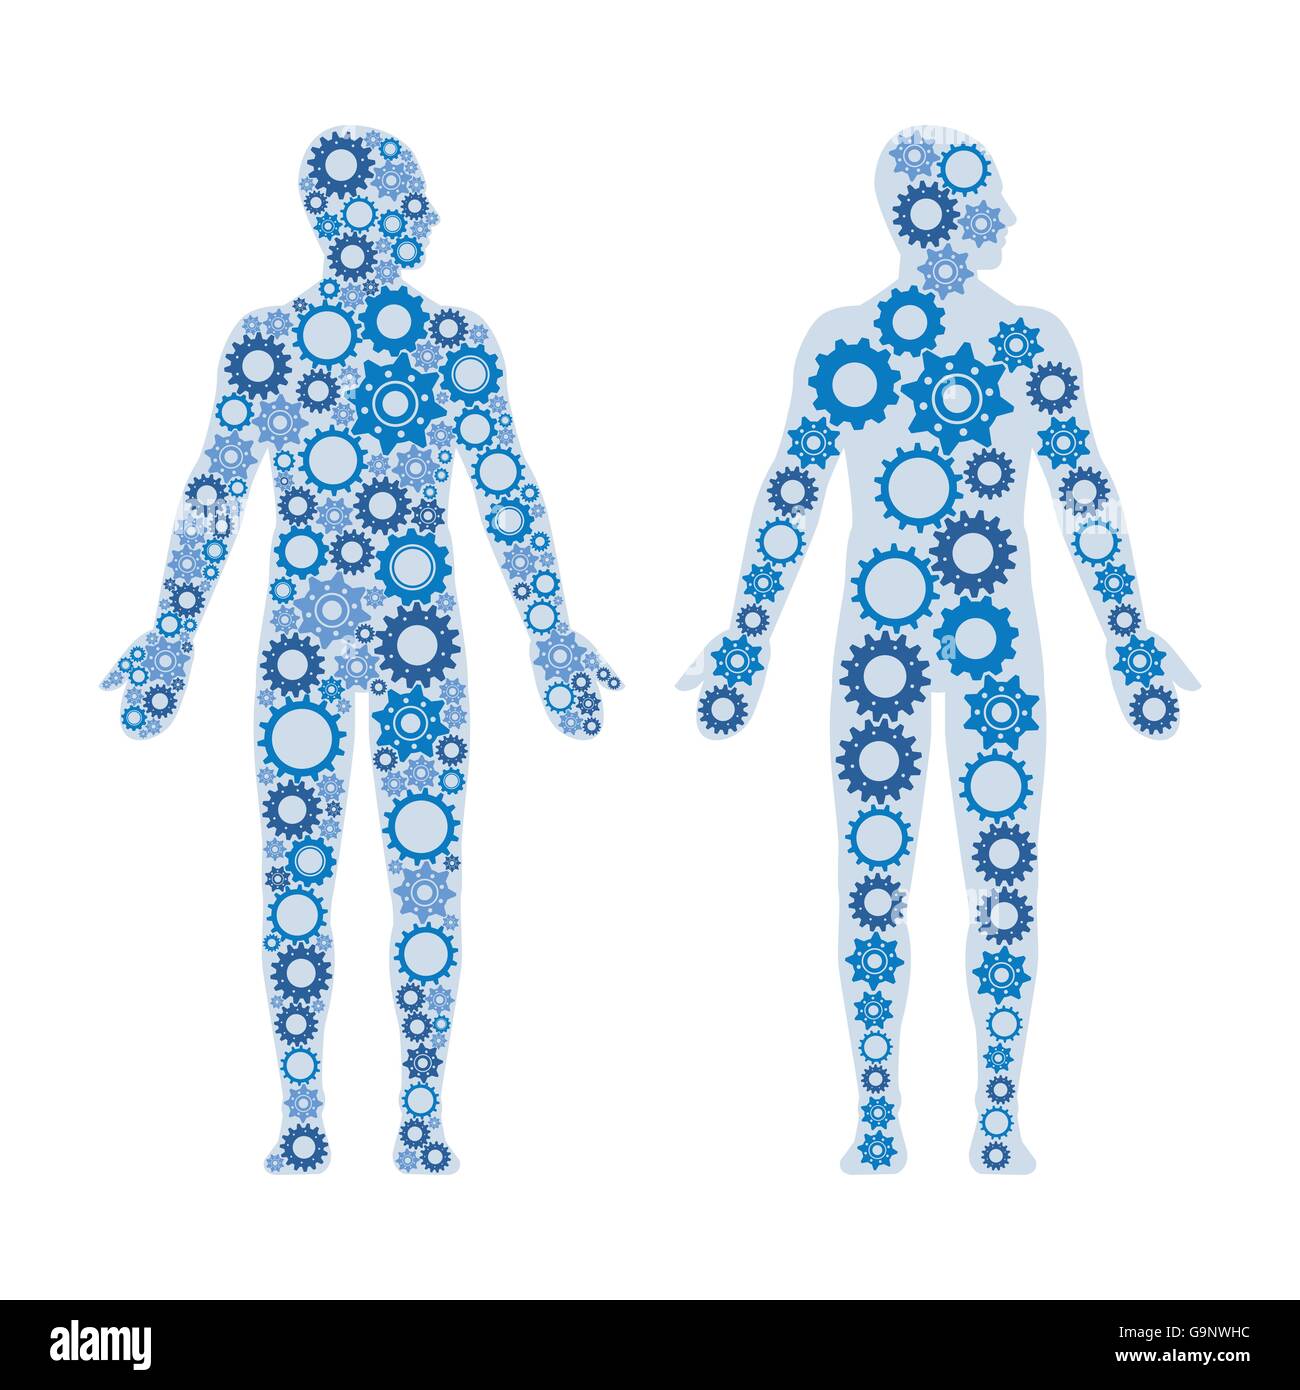 Menschlichen Männerkörpern bestehend aus Getriebe, gesunde Lebensweise und Anatomie-Konzept Stock Vektor